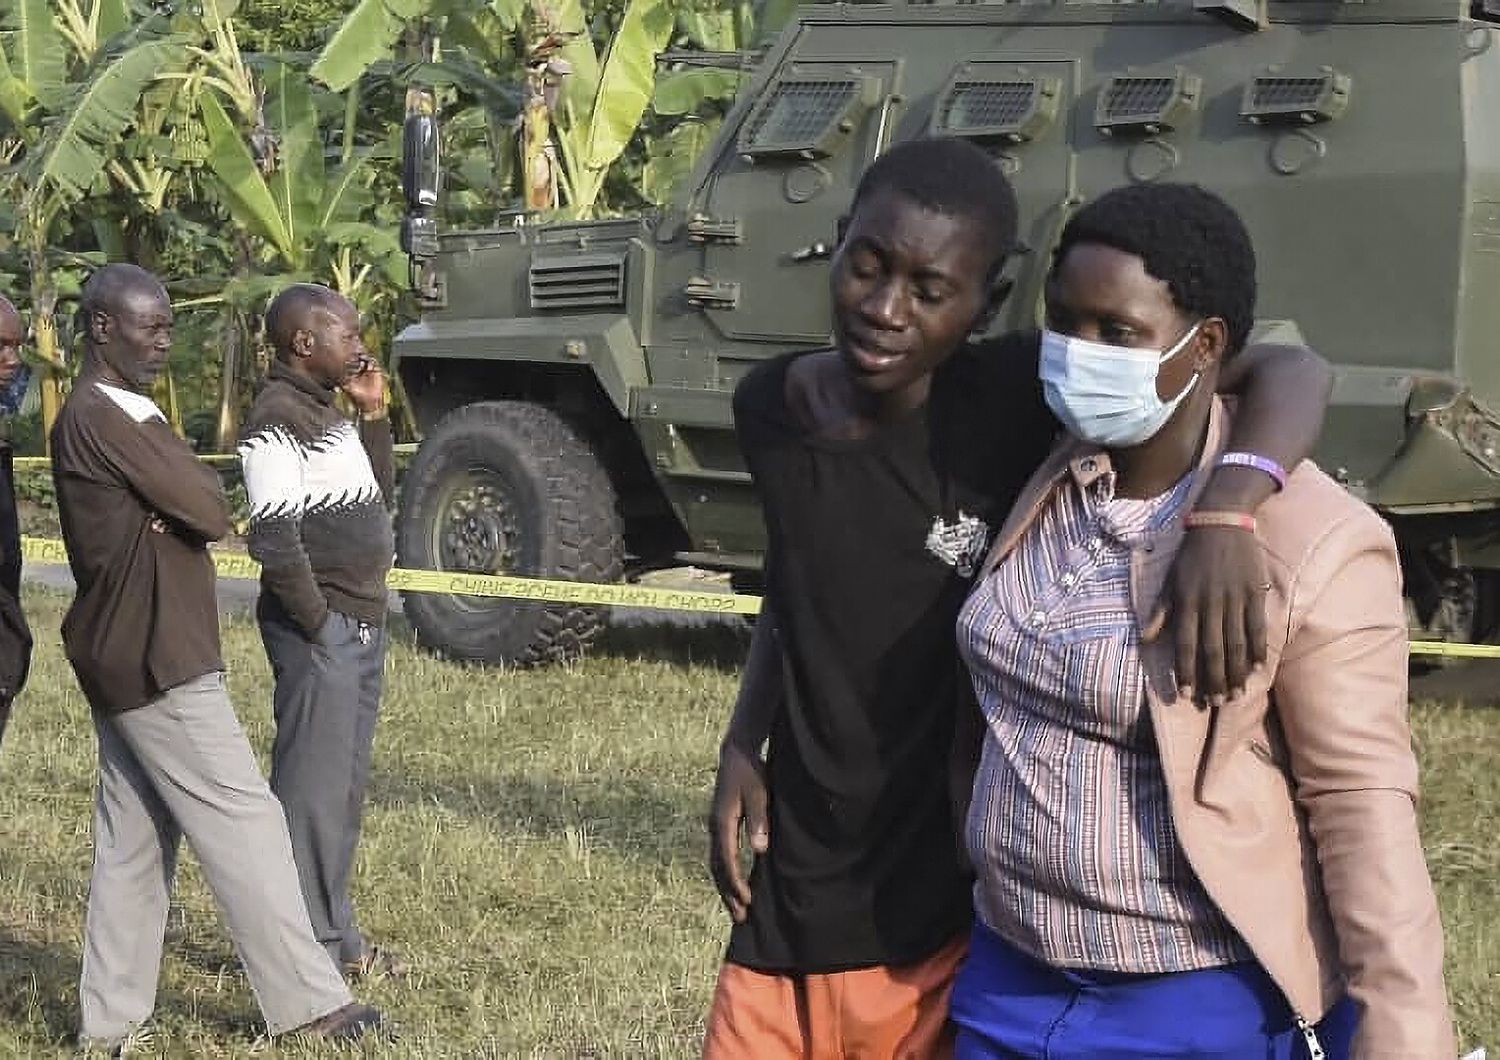 Il dolore dei parenti delle vittime dell'attentato alla scuola in Uganda